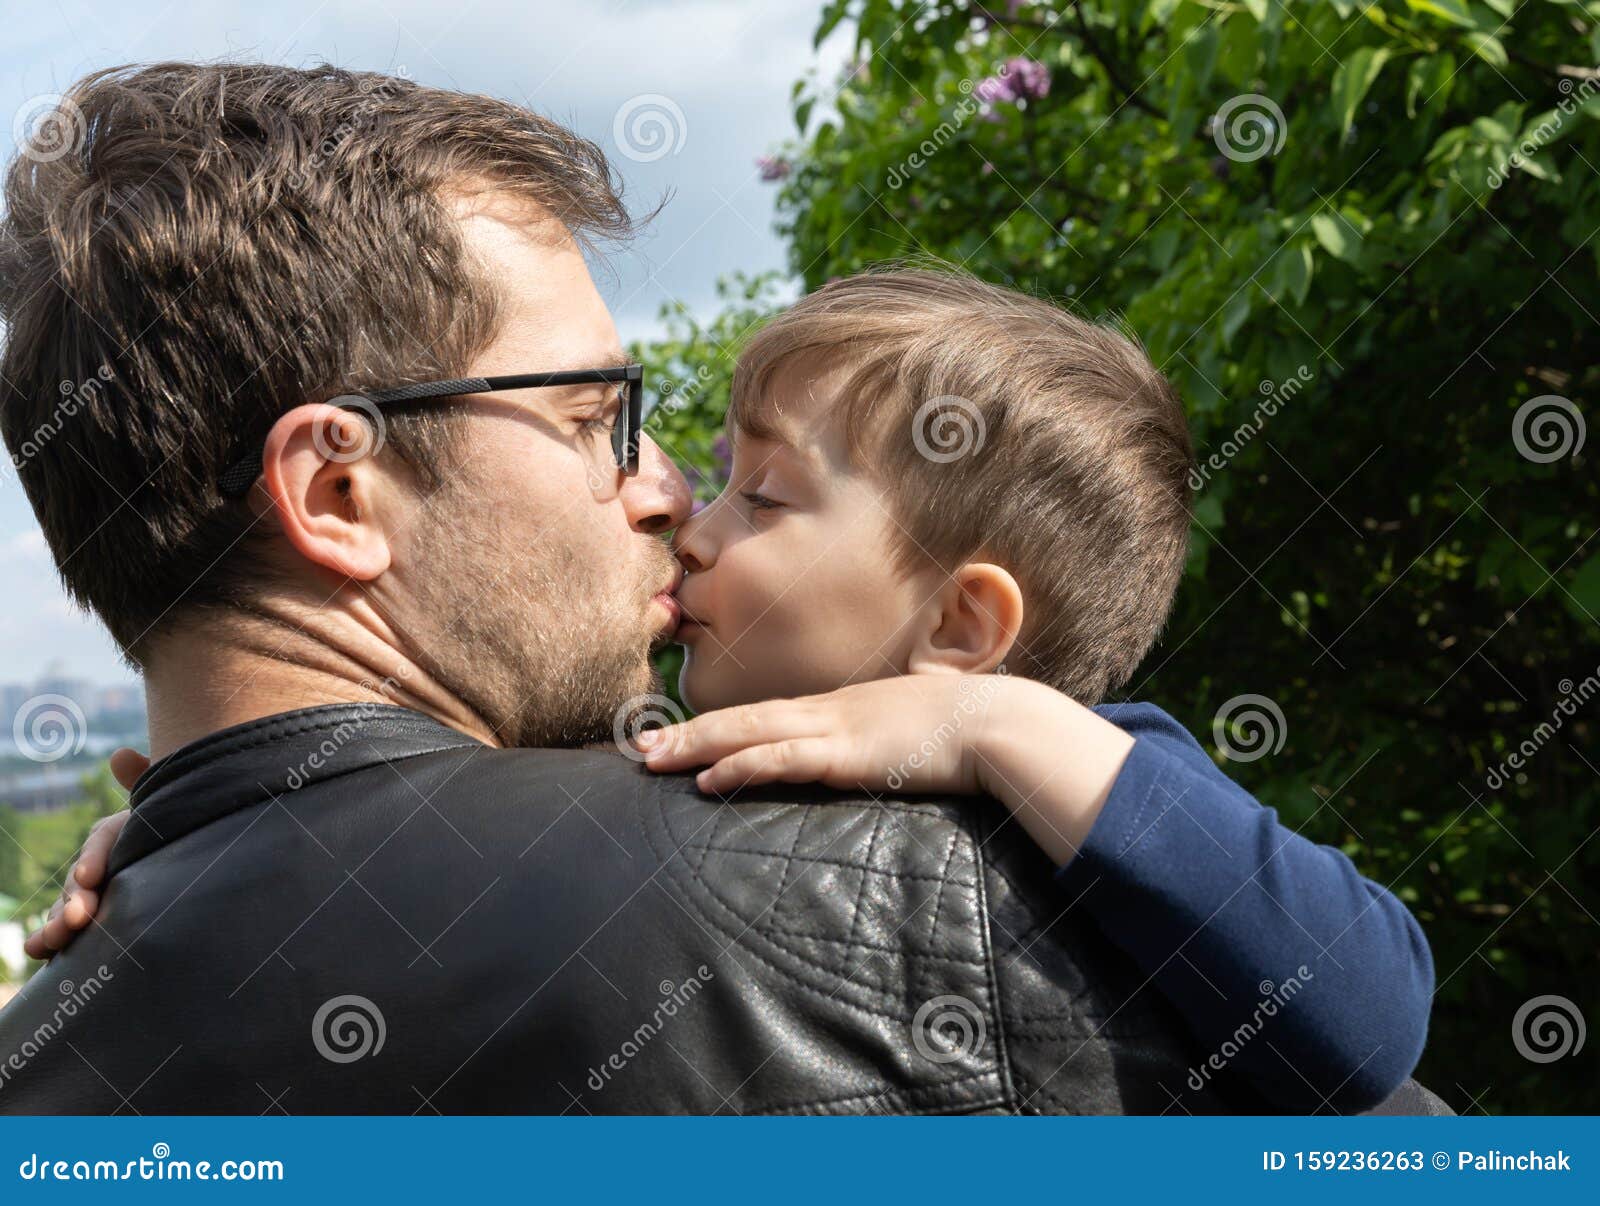 Yo father bongacam photo. Отец целует сына. Поцелуй сына. Папа и сын поцелуй. Любовь отца к сыну.